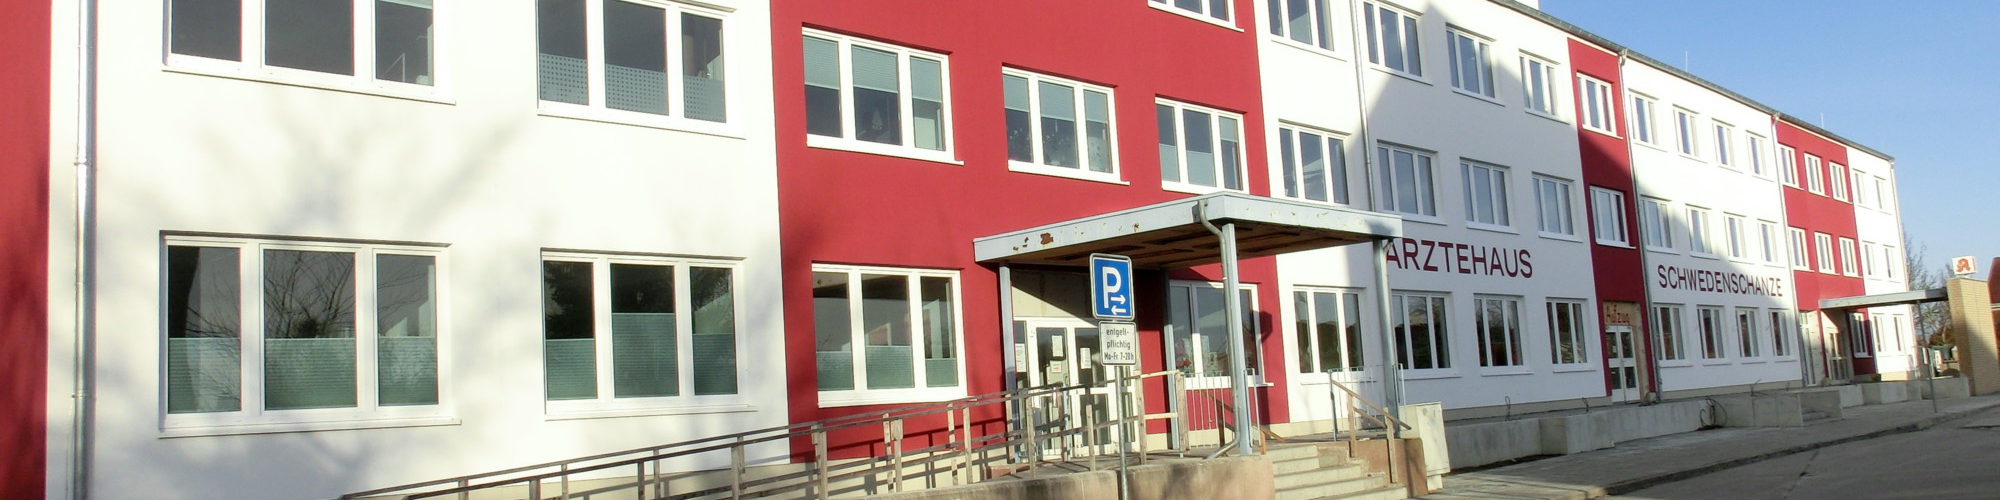 Augenzentrum Stralsund